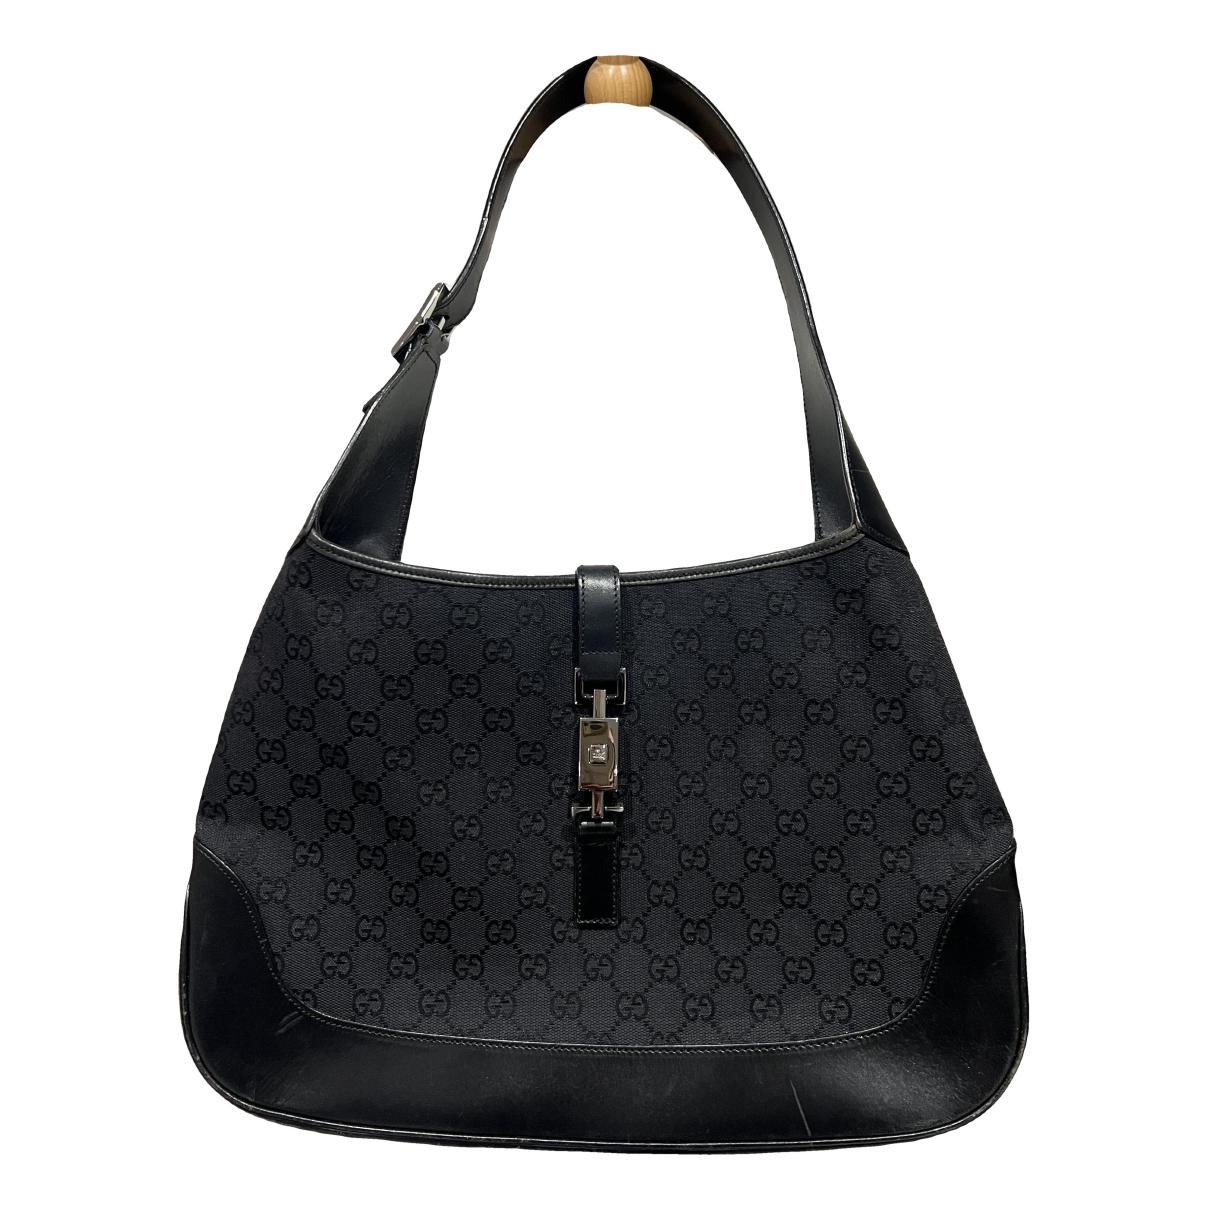 Jackie Vintage leather handbag